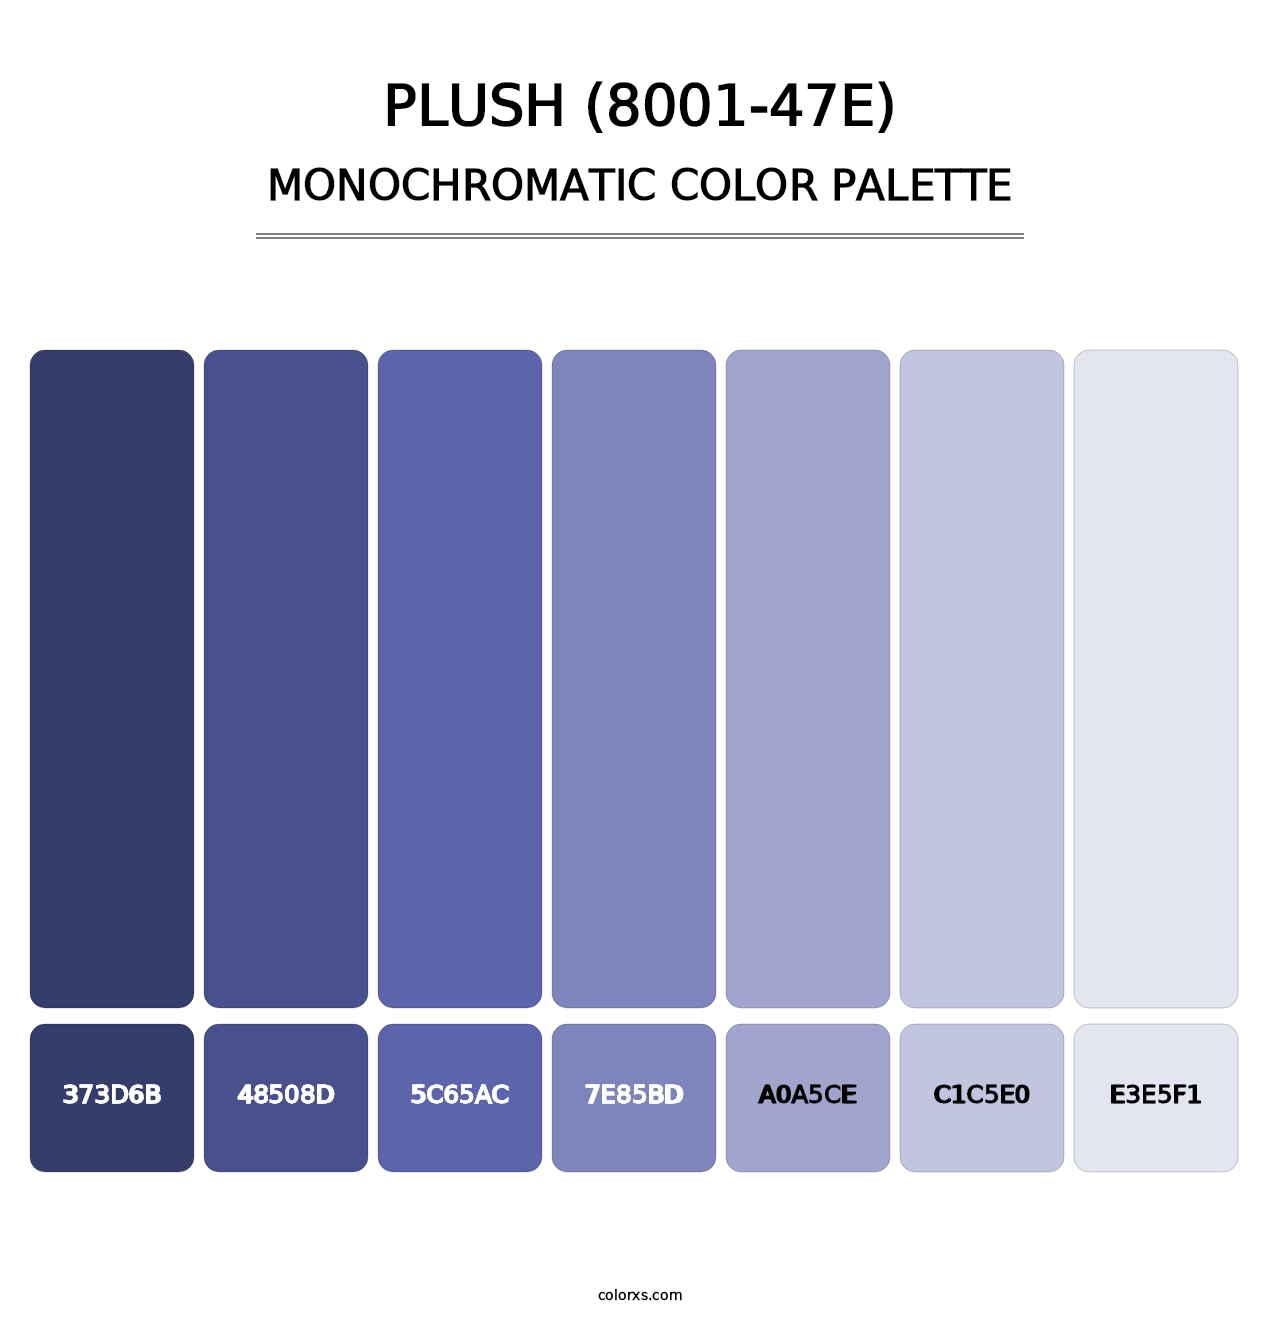 Plush (8001-47E) - Monochromatic Color Palette